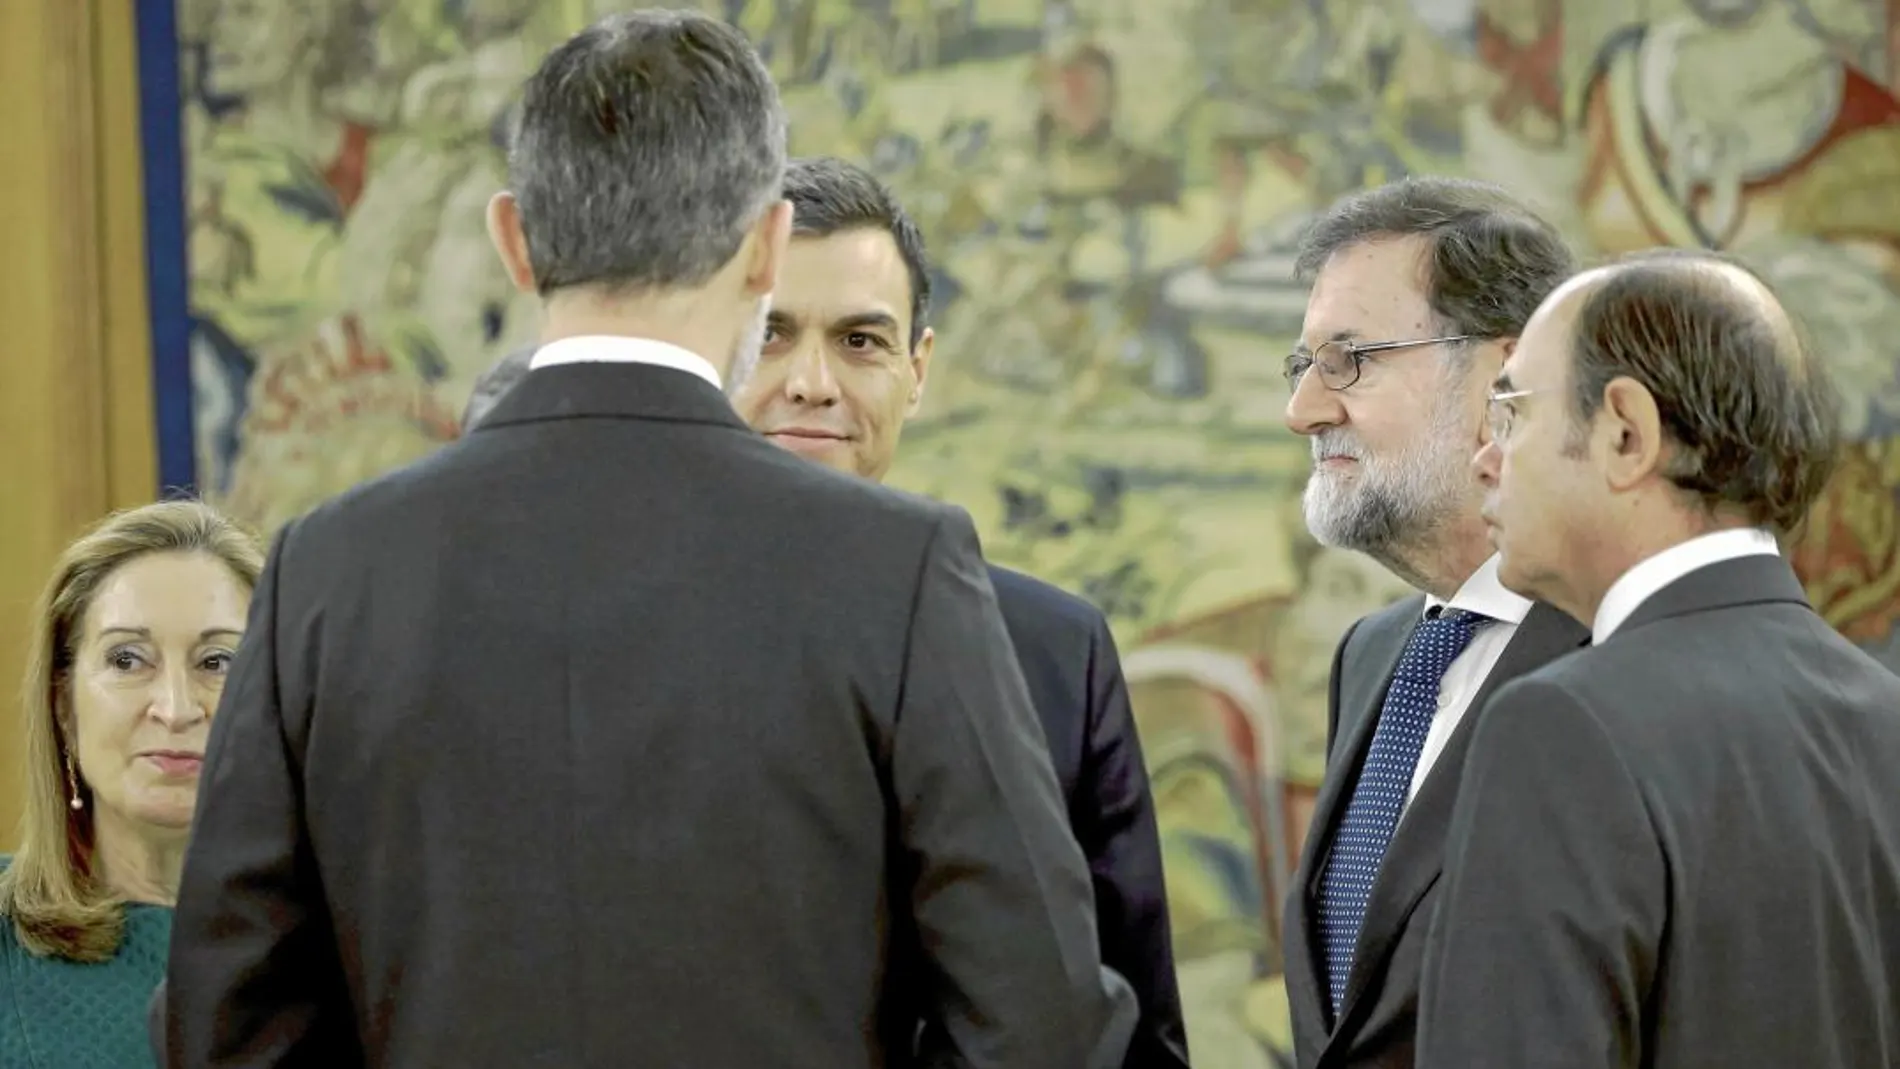 Primera conversación como presidente. Tras prometer el cargo Sánchez charló con el Rey, Ana Pastor, Mariano Rajoy y Pío García Escudero / Pool